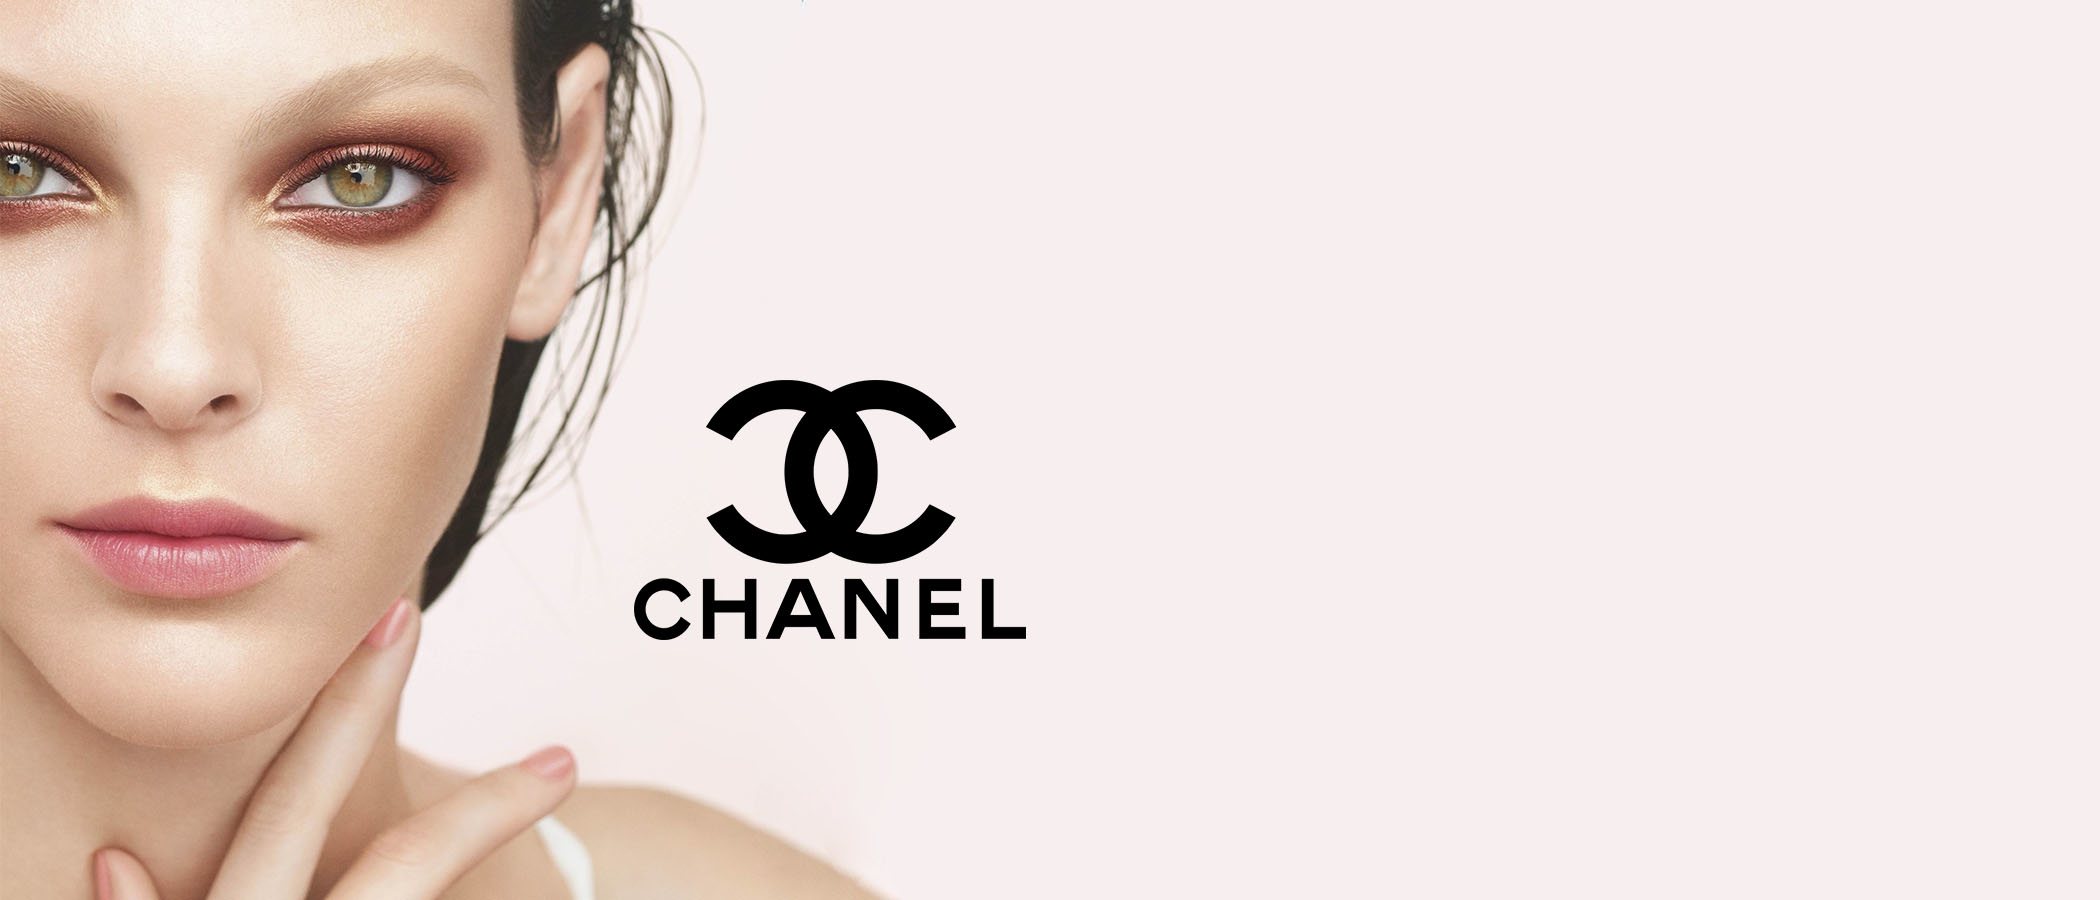 El maquillaje más luminoso y natural viene de la mano de Chanel con su colección 'Éclat et Transparence'